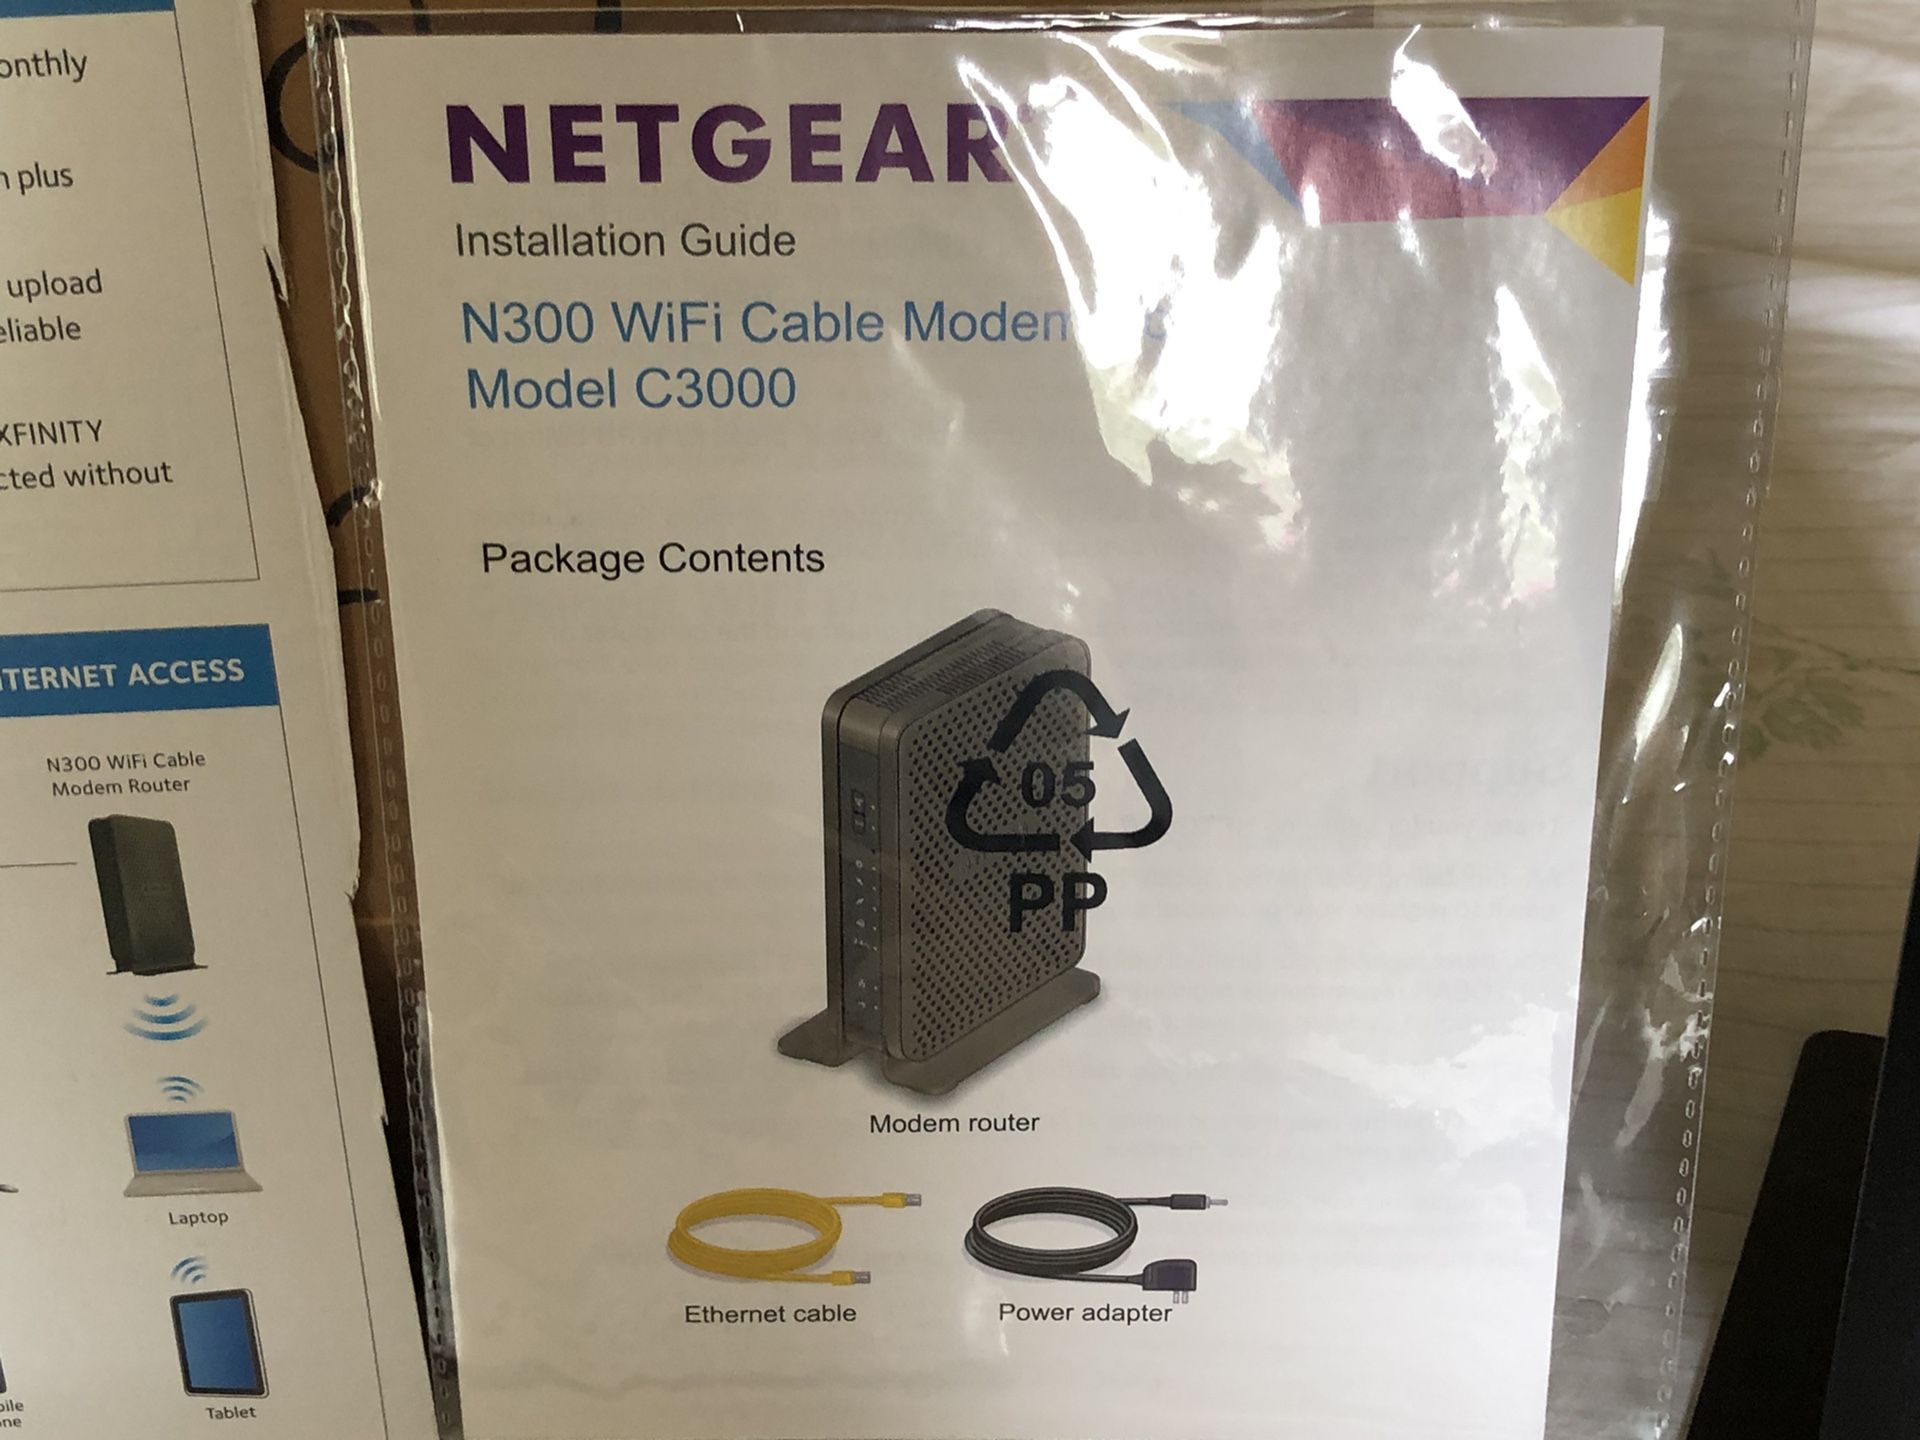 NETGEAR Cable Modem Router